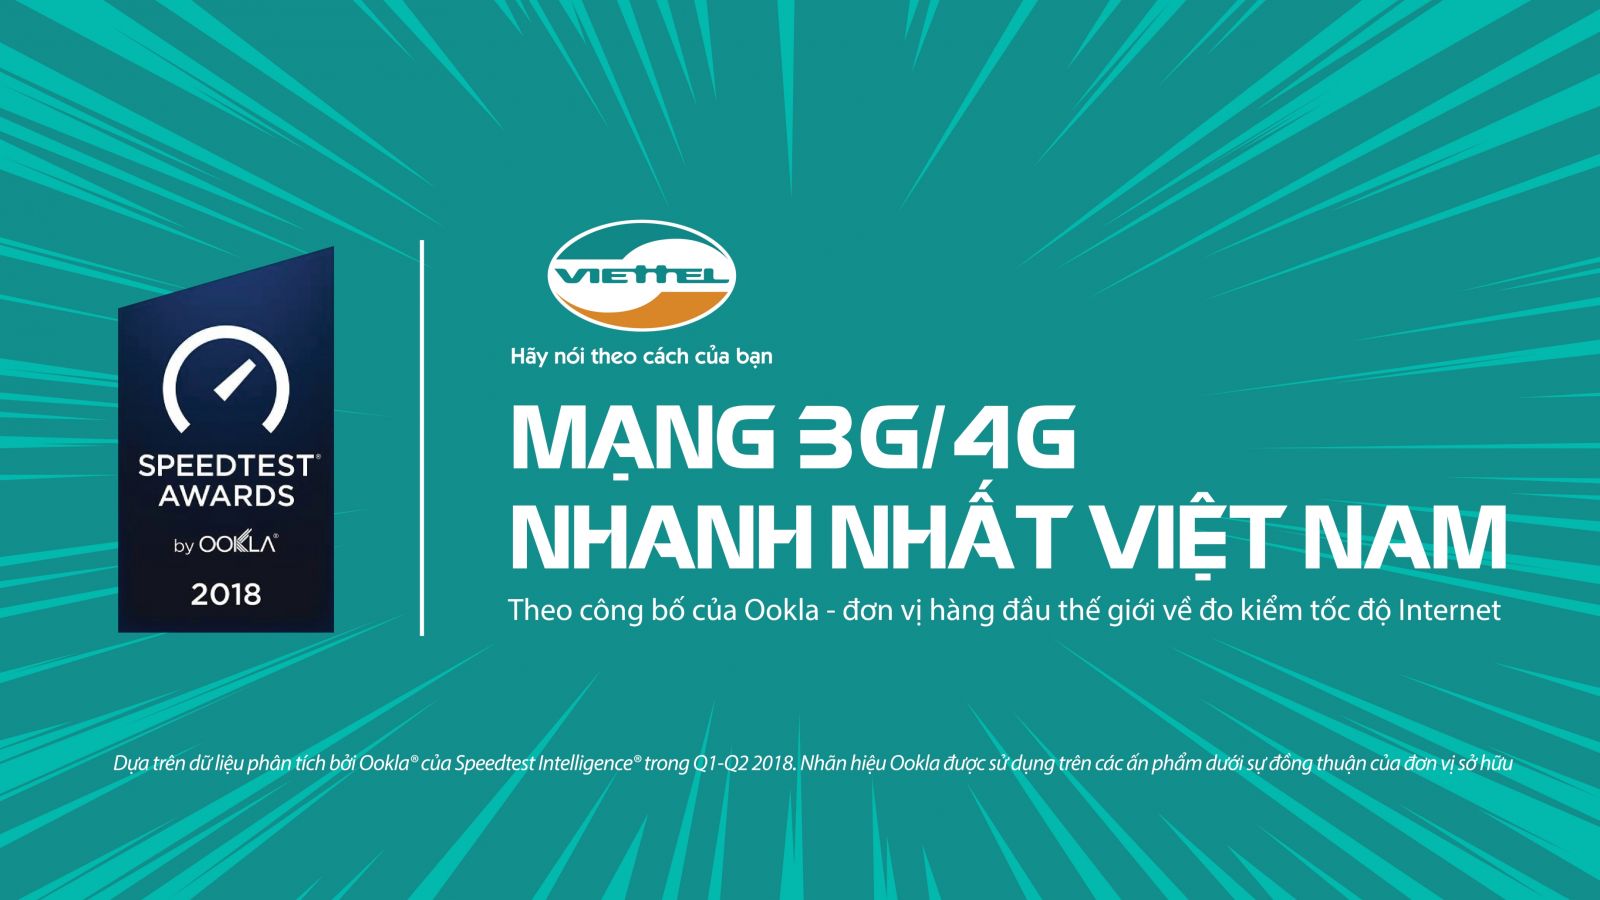 Speedtest tuyên bố Viettel là mạng di động nhanh nhất Việt Nam